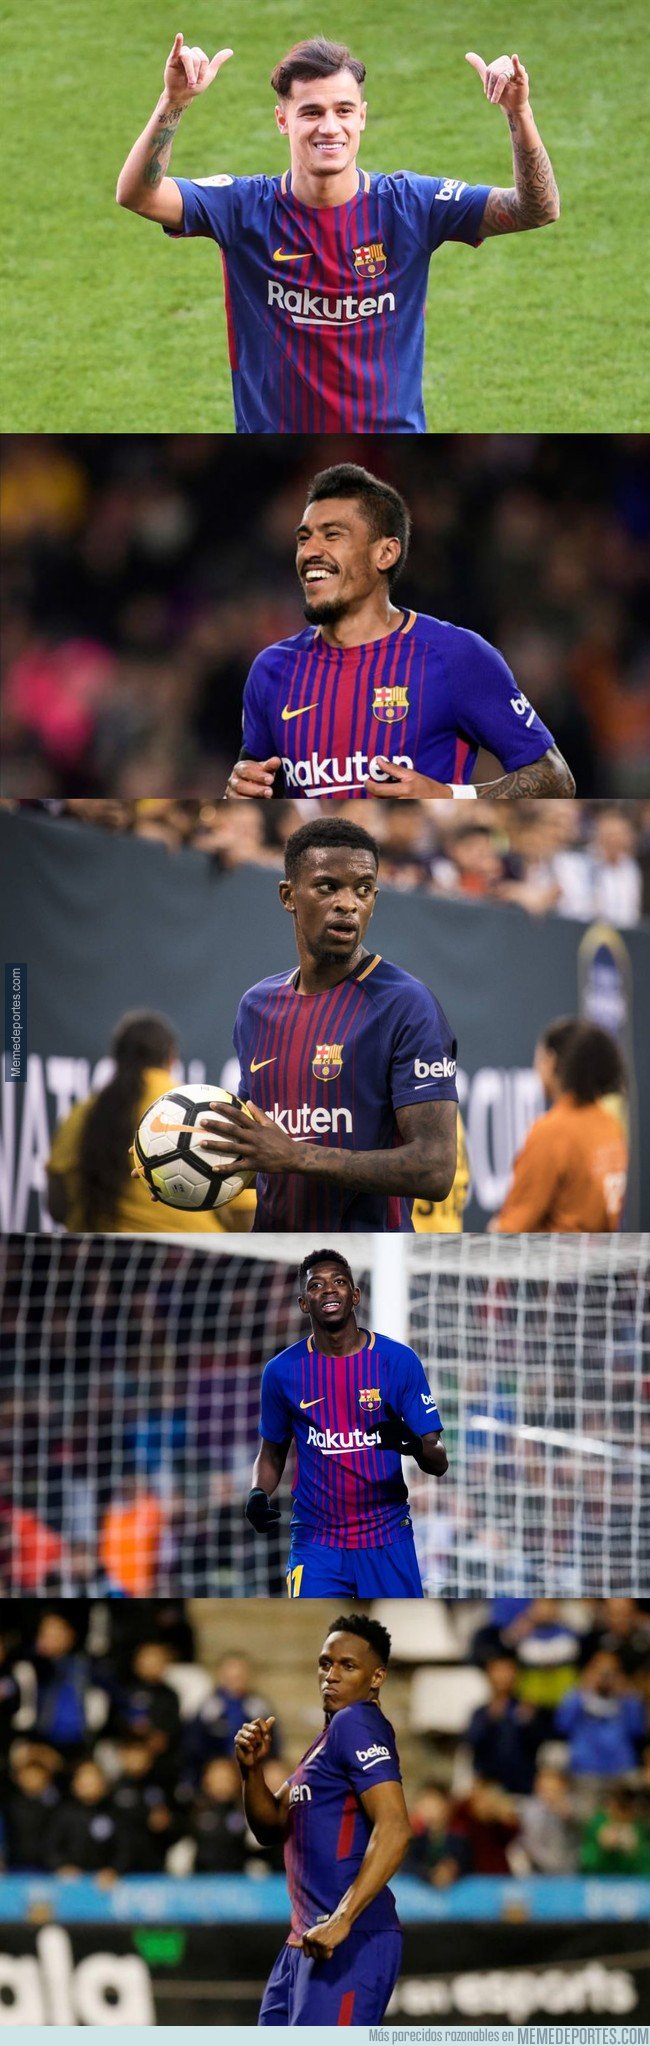 1031070 - Los 5 jugadores del Barça que aún no tienen ningún título en blaugrana